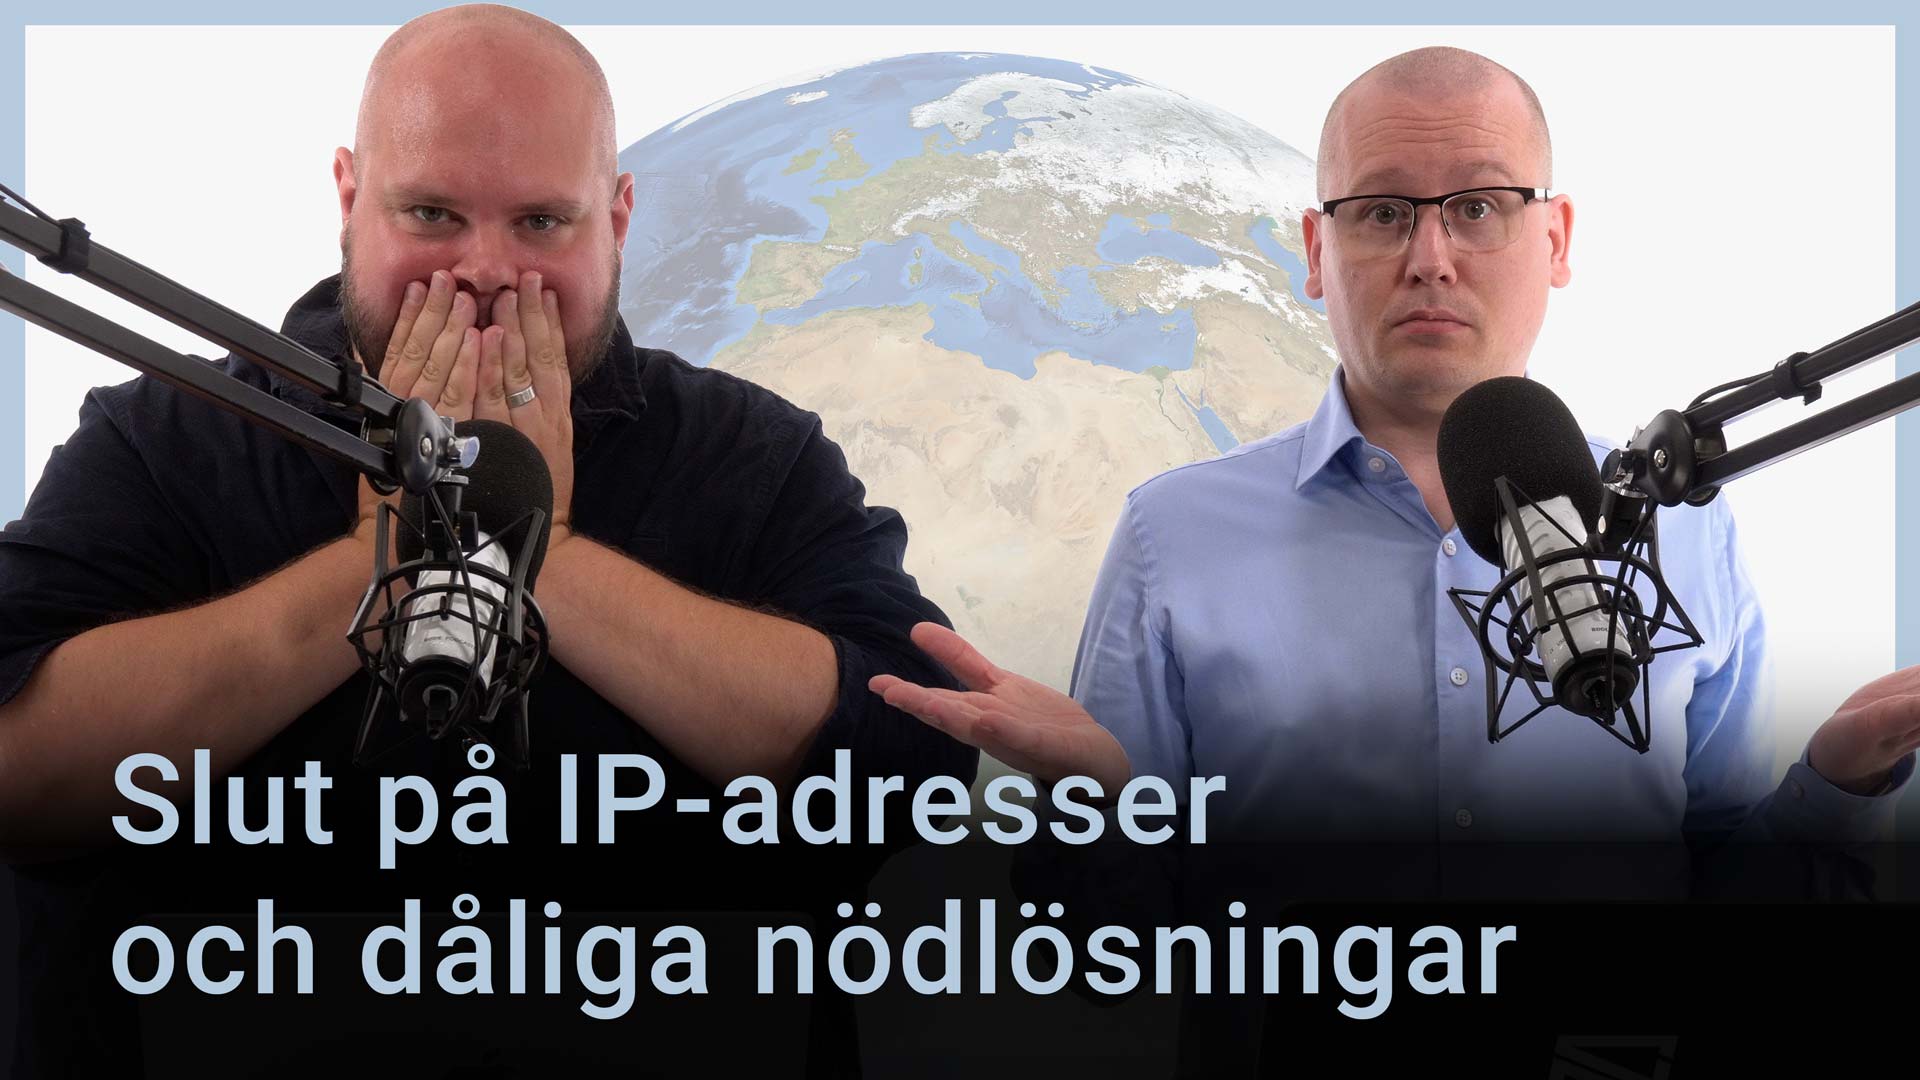 Peter Esse och Karl Emil Nikka står vid sina mikrofoner. Texten ”Slut på IP-adresser och dåliga nödlösningar” står ovanpå.